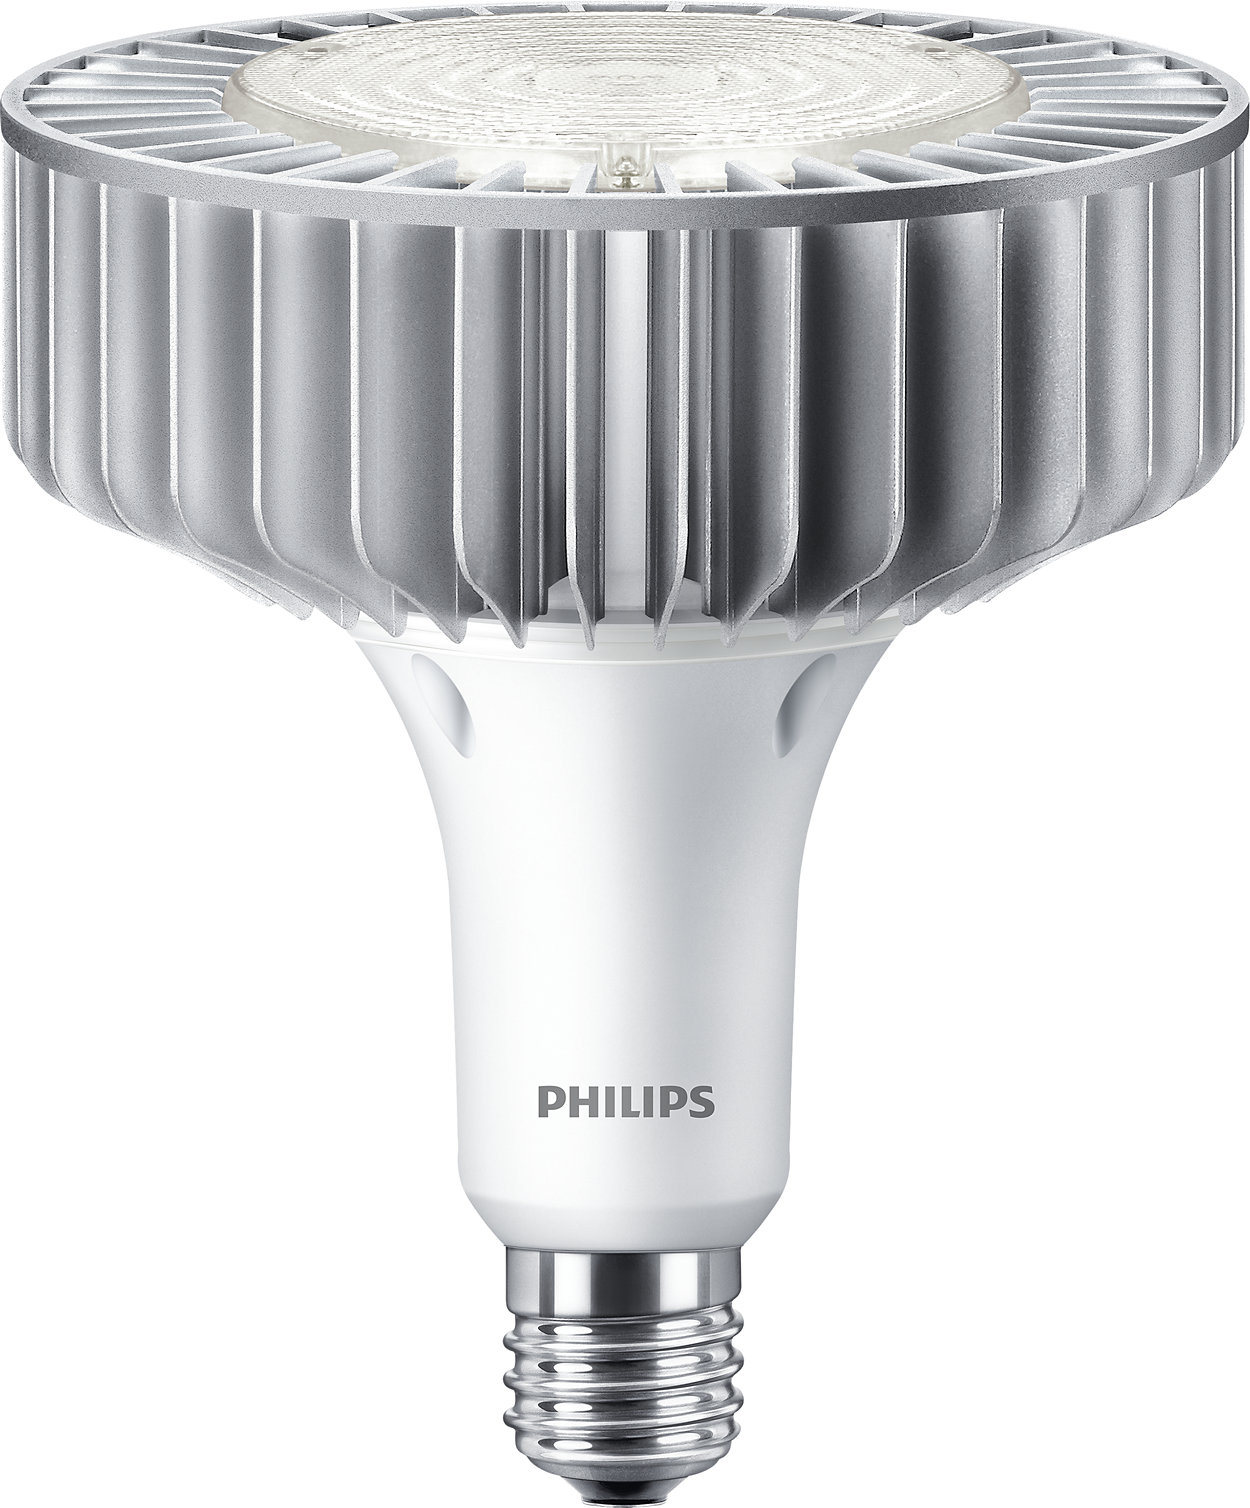 Идеально подходит для замены ламп HPI/SON/HPL LED в помещениях с высокими потолками